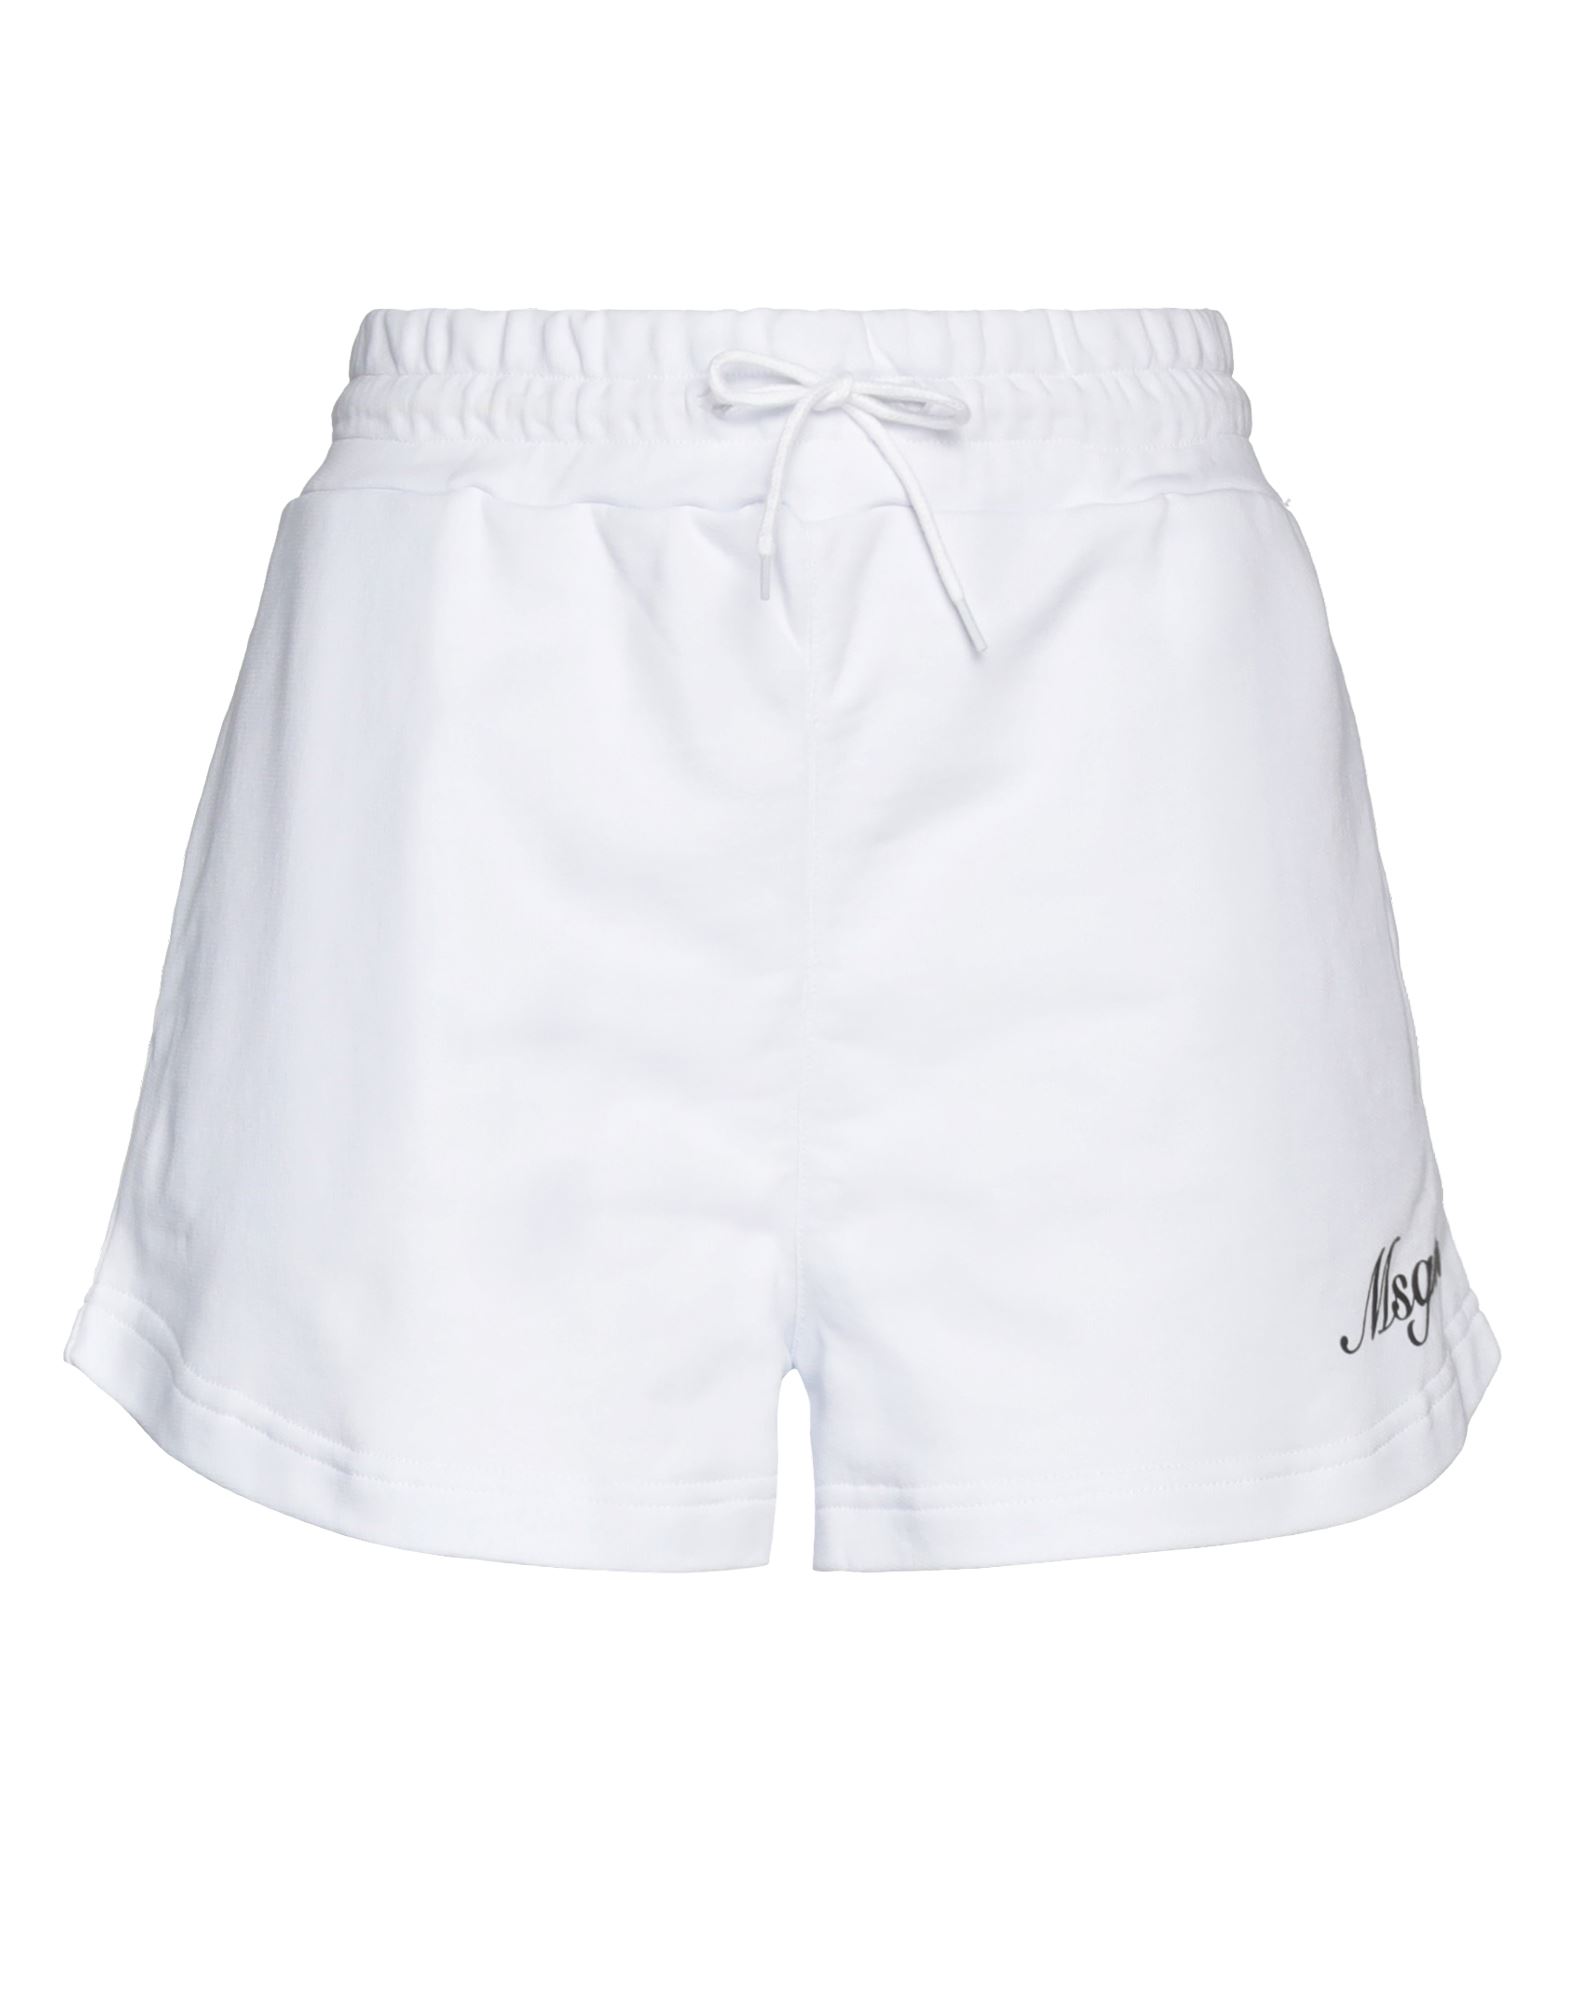 Msgm Woman Shorts & Bermuda Shorts White Size L Cotton